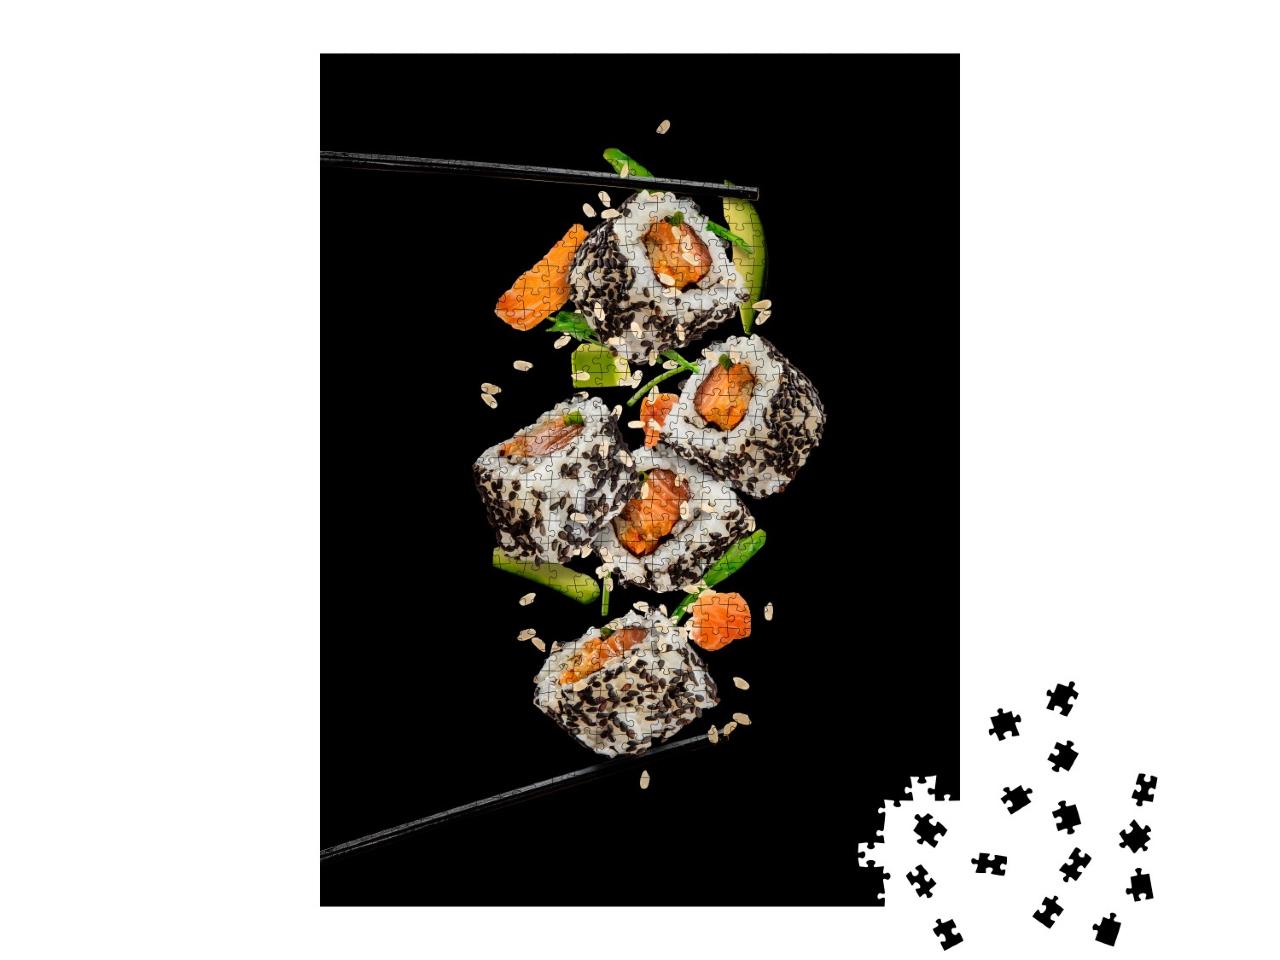 Puzzle de 1000 pièces « Morceaux de sushi entre les baguettes »